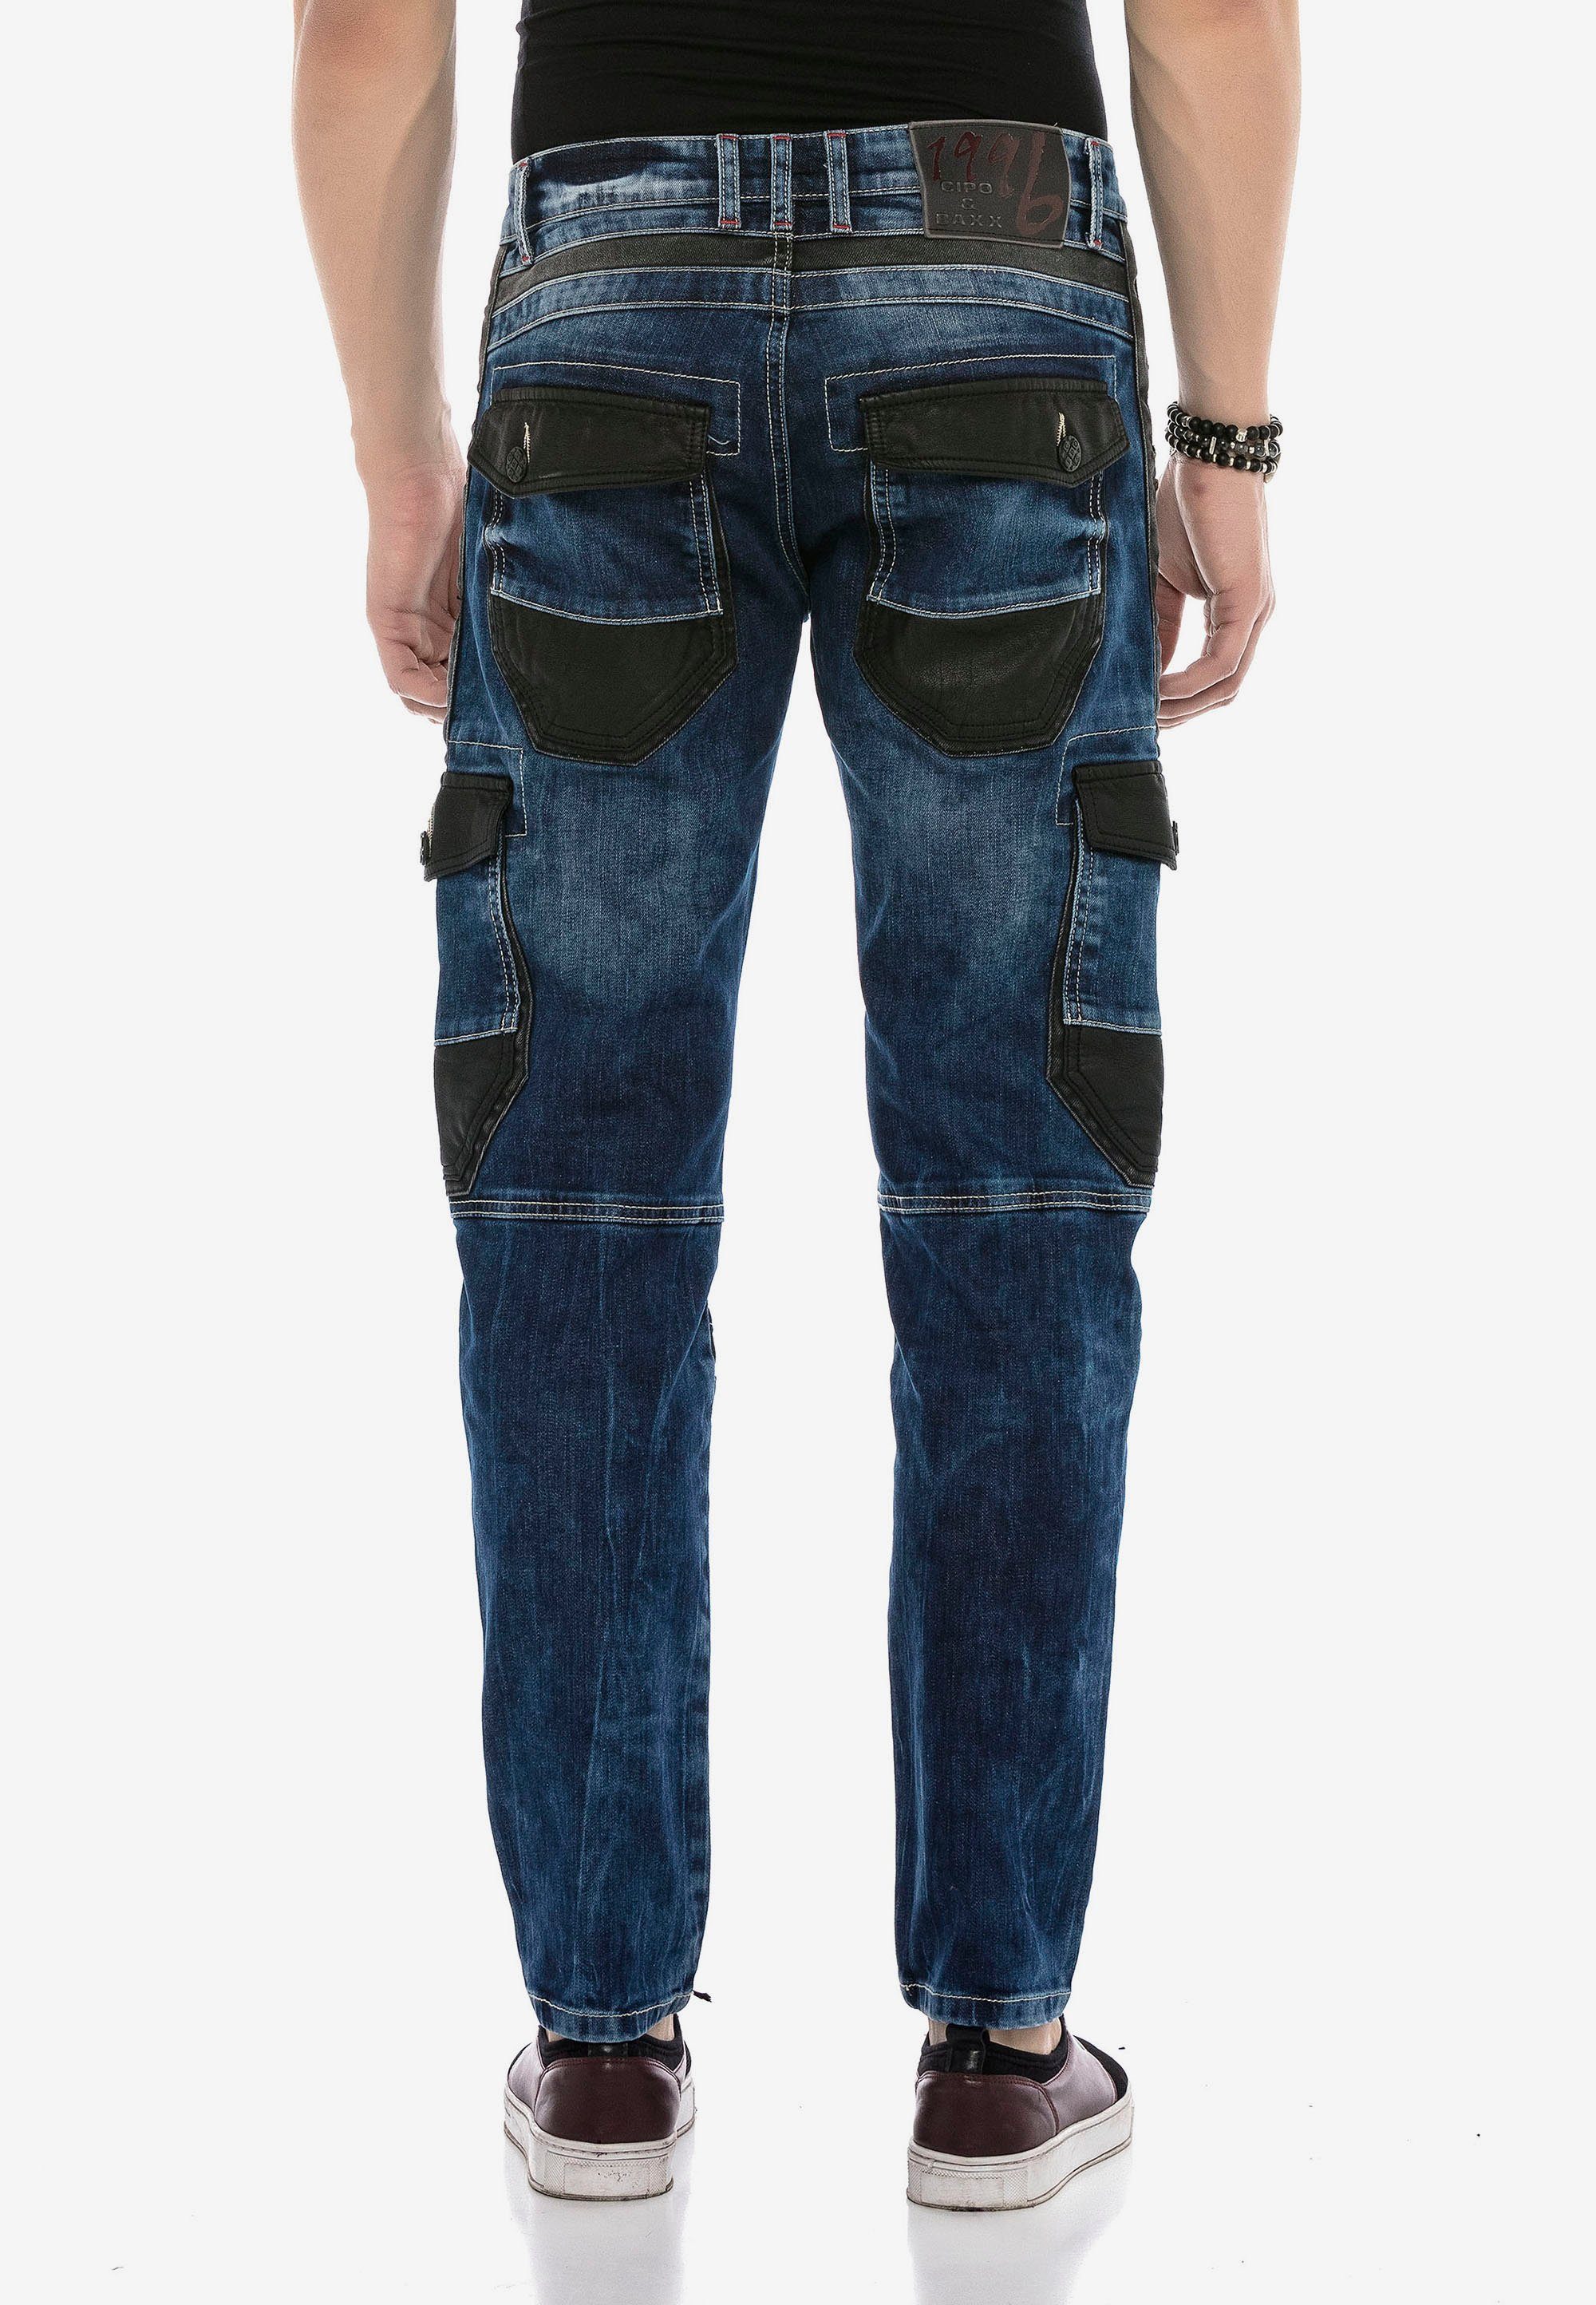 Cipo & Baxx Jeans Applikationen mit auffälligen Bequeme